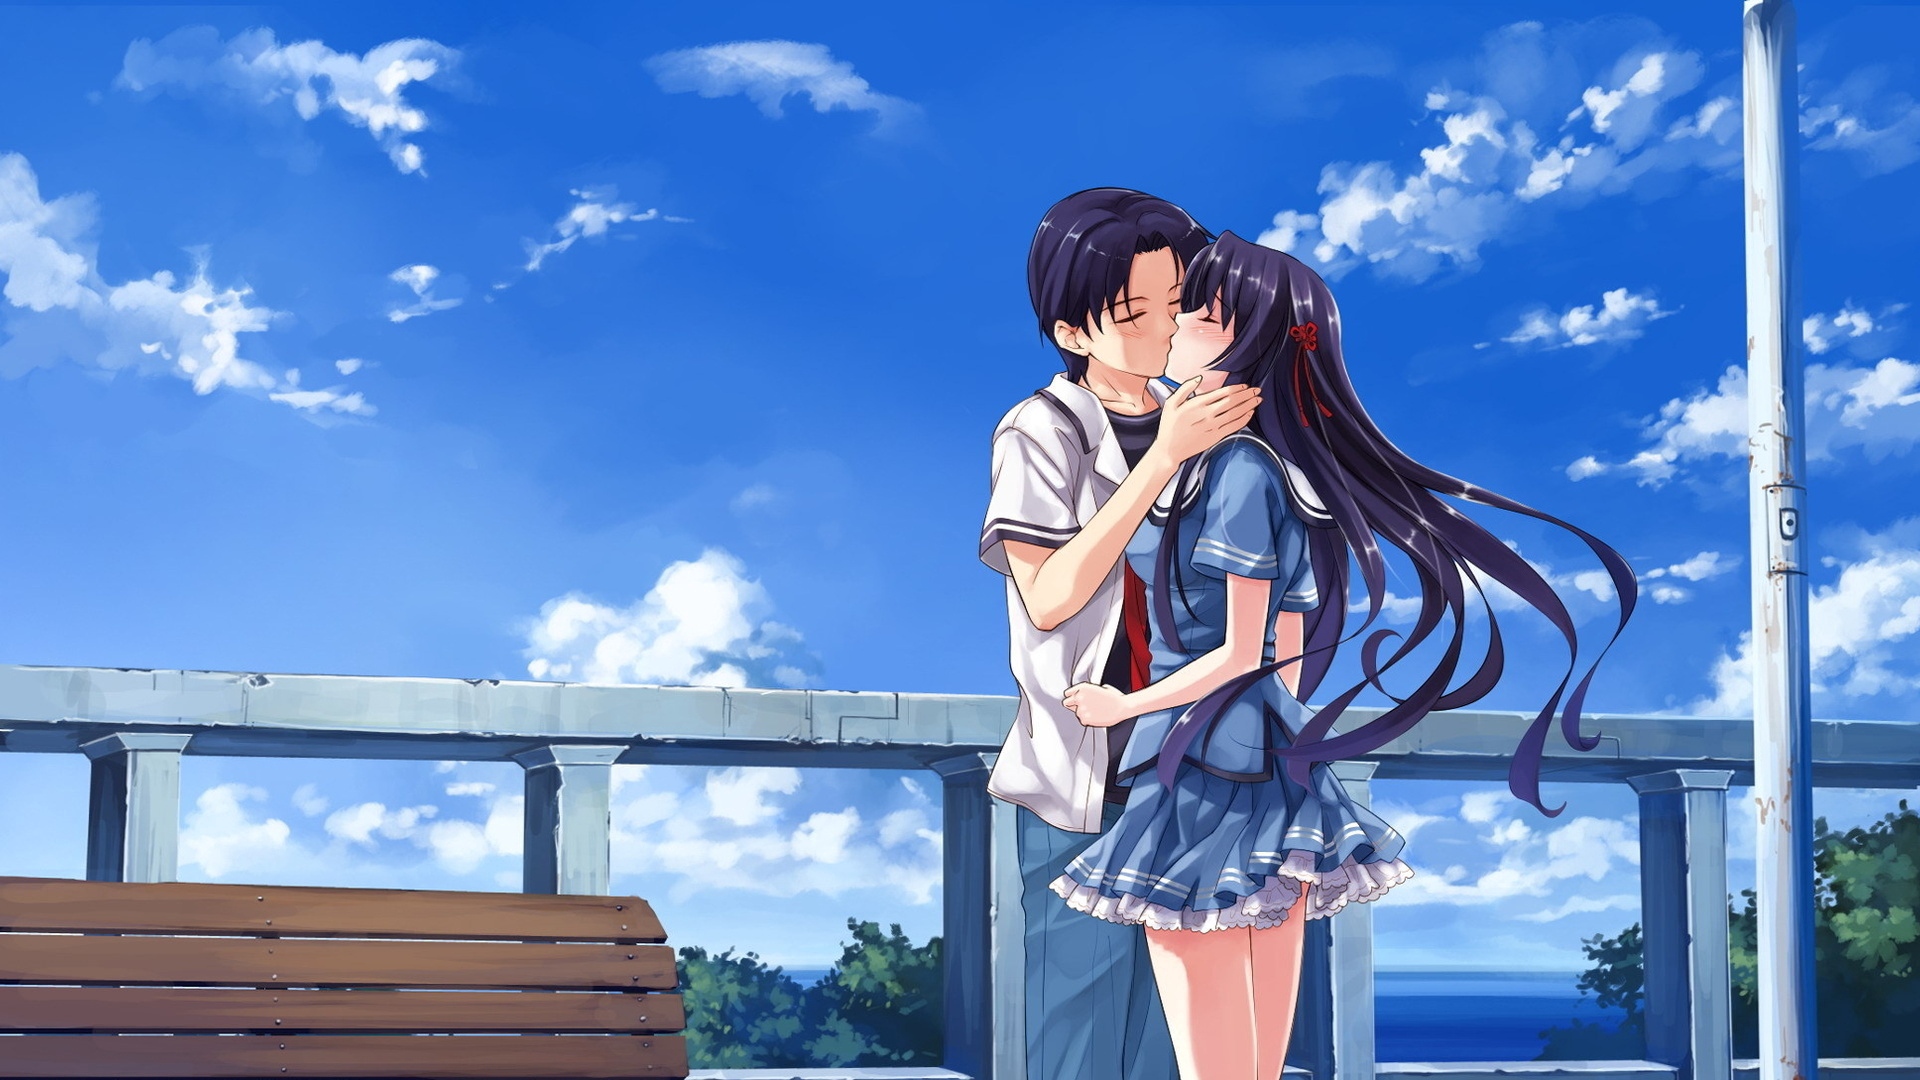 Anime Boy And Girl Kissing Wallpapers